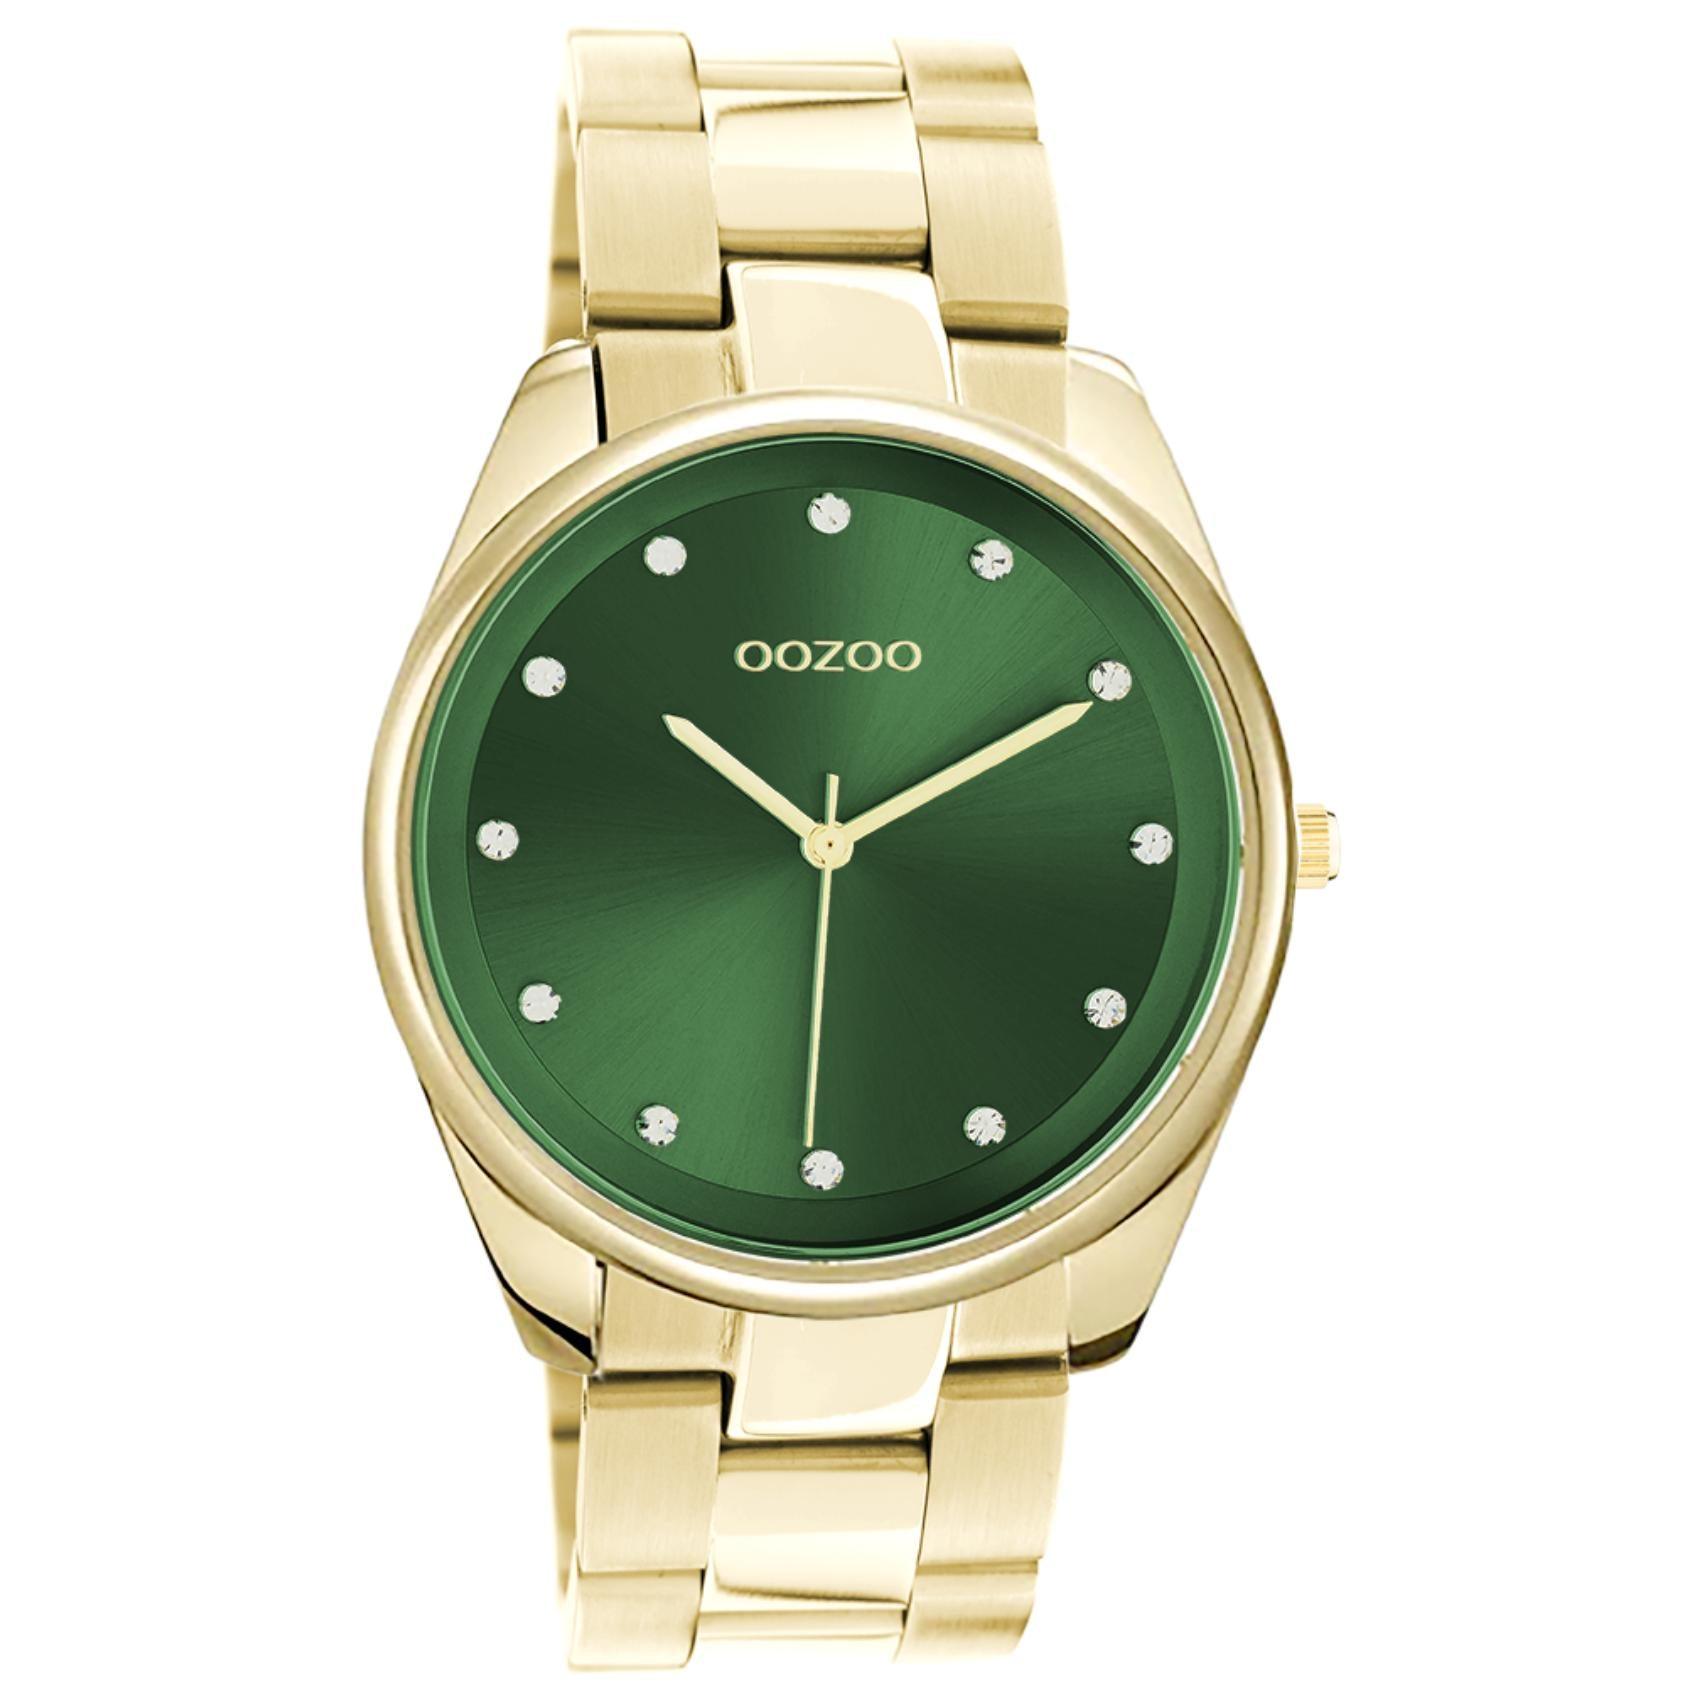 Ρολόι Oozoo C10966 με χρυσό ατσάλινο μπρασελέ, πράσινο καντράν διαμέτρου 36mm με ζιργκόν και μηχανισμό μπαταρίας quartz.